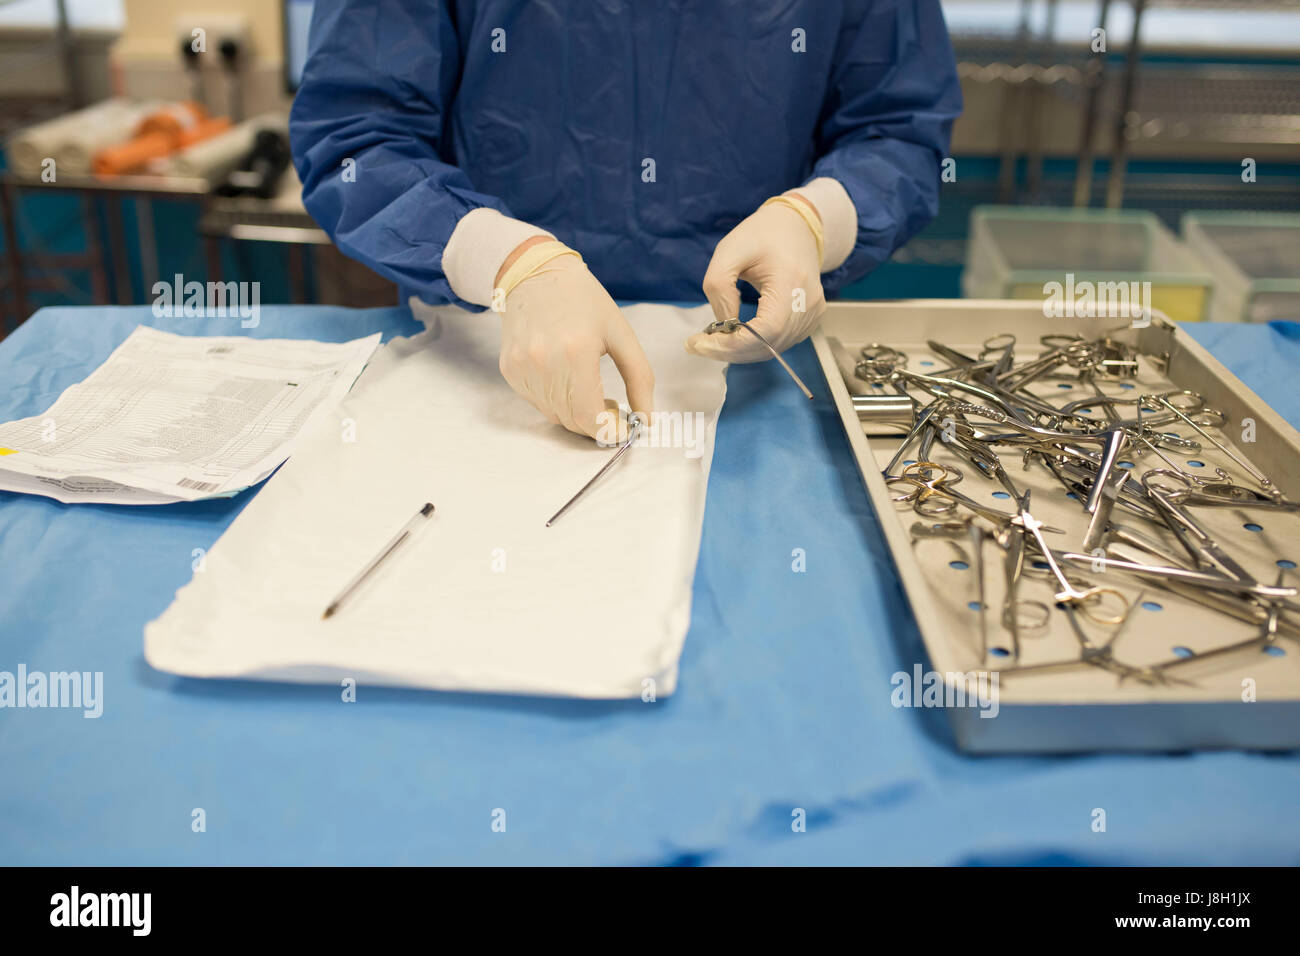 Gli strumenti chirurgici vengono puliti e sterilizzati presso un ospedale da uno strumento chirurgico società sterilizzante Foto Stock